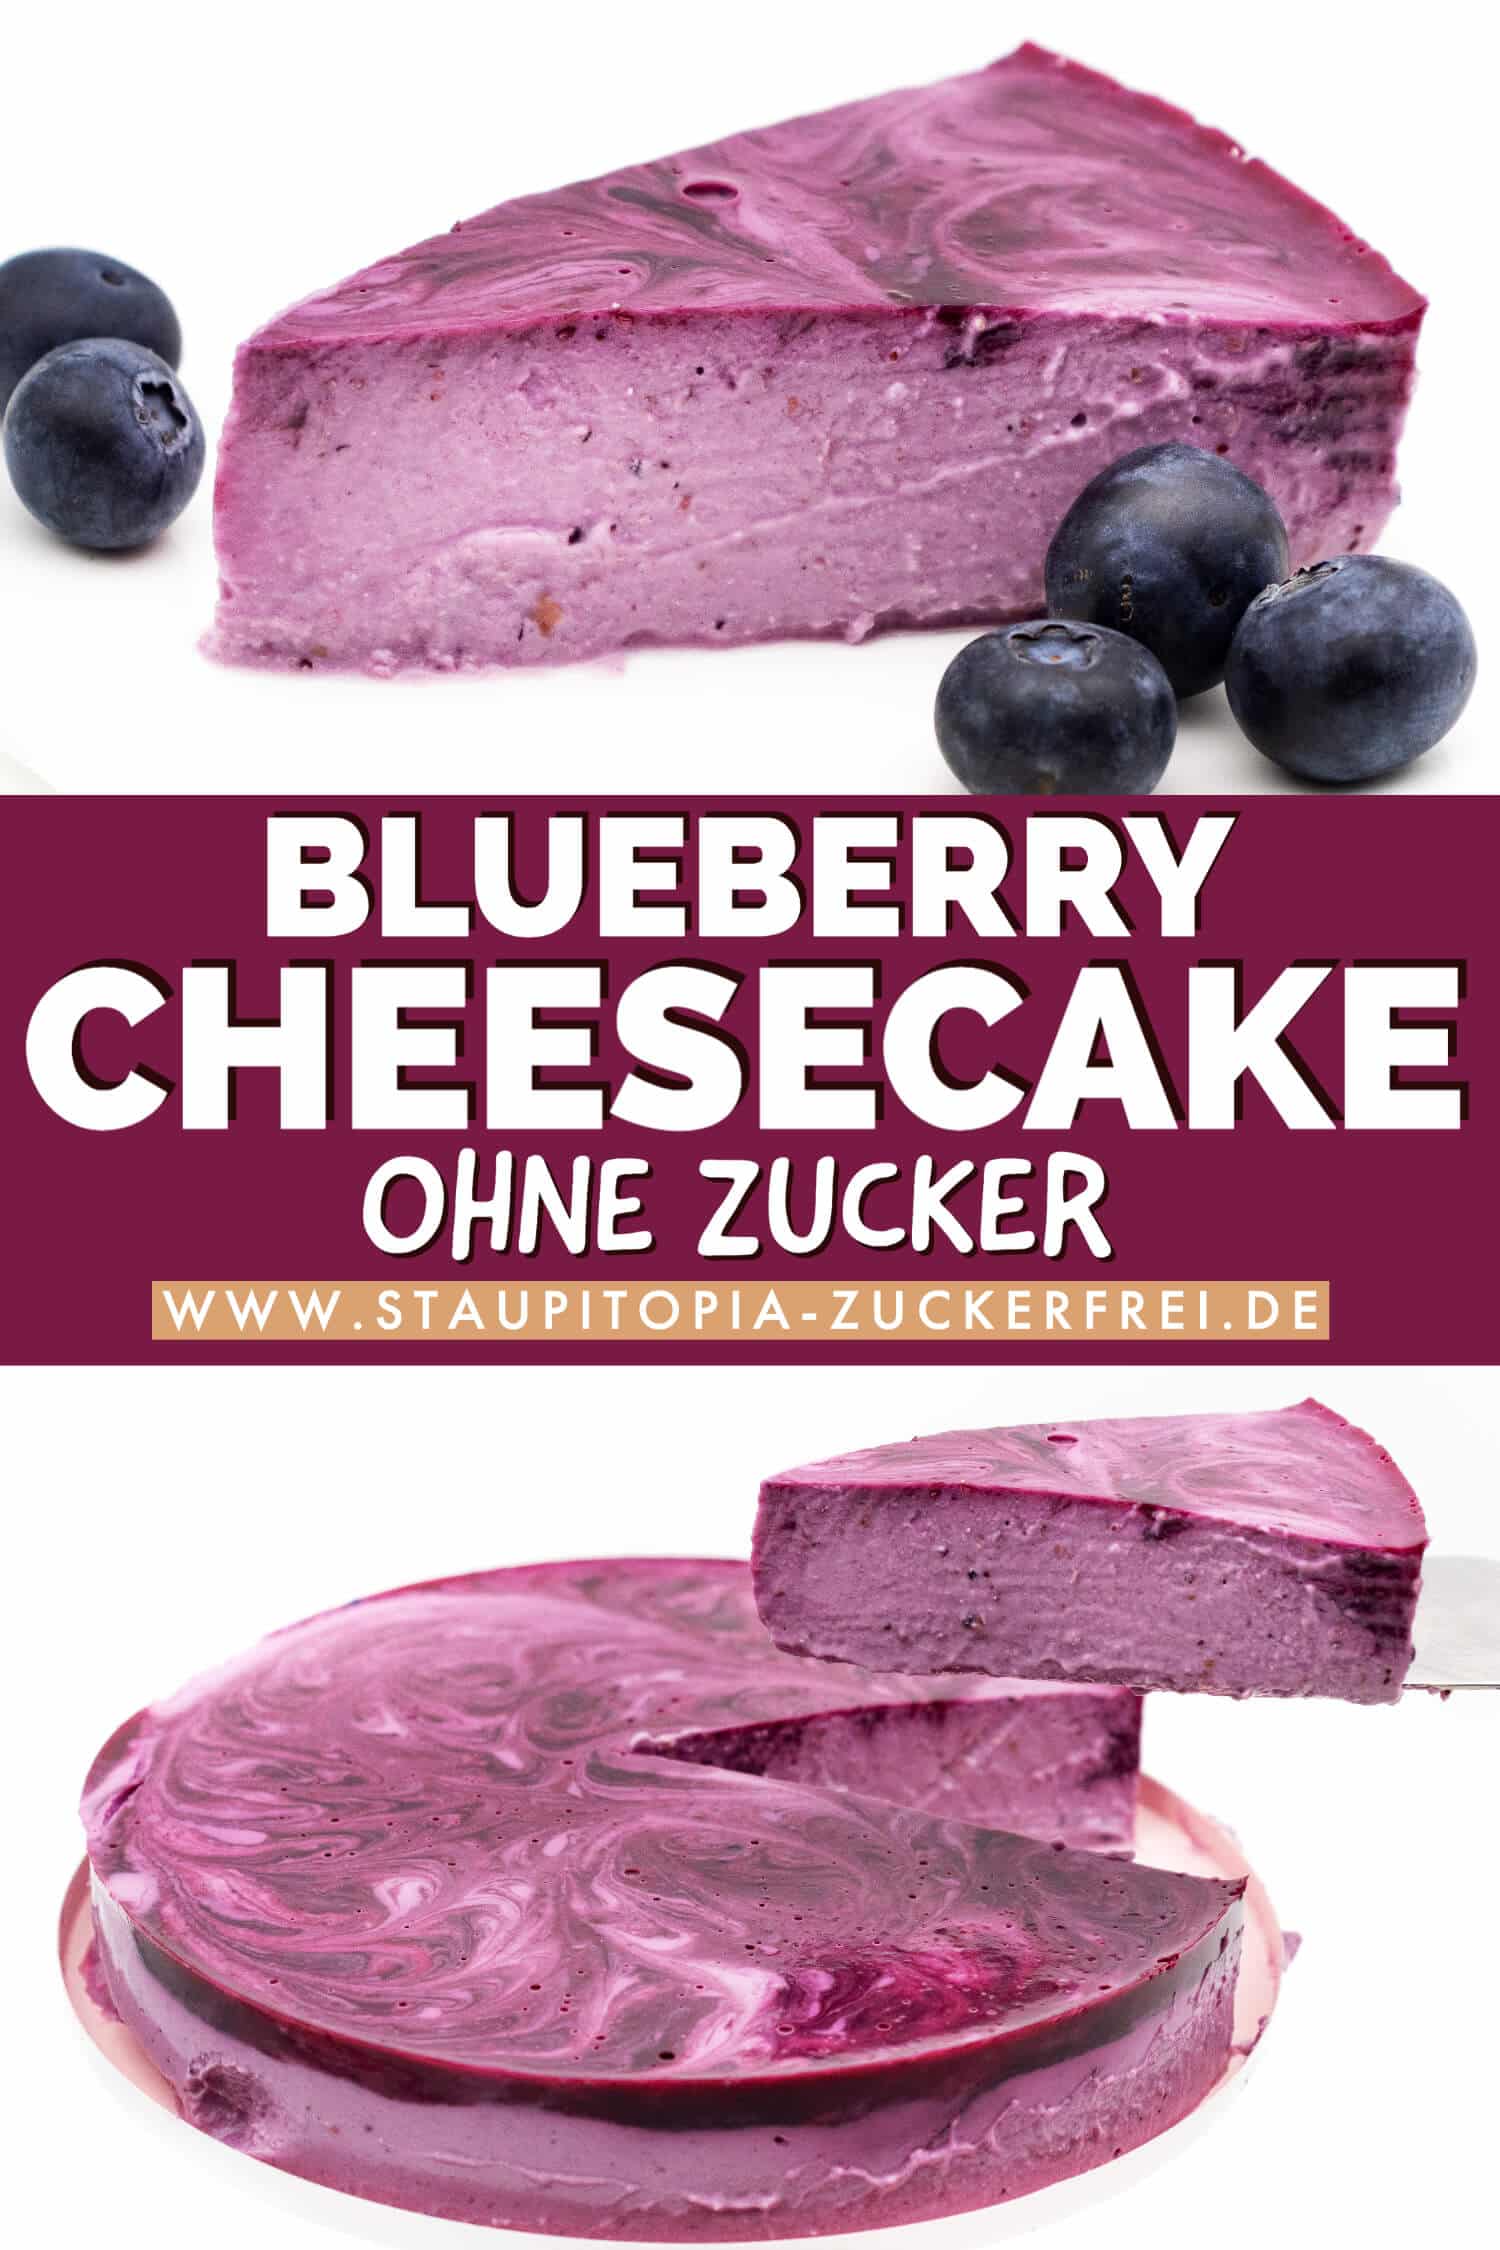 Blueberry Cheesecake Rezept ohne Zucker und ohne Mehl